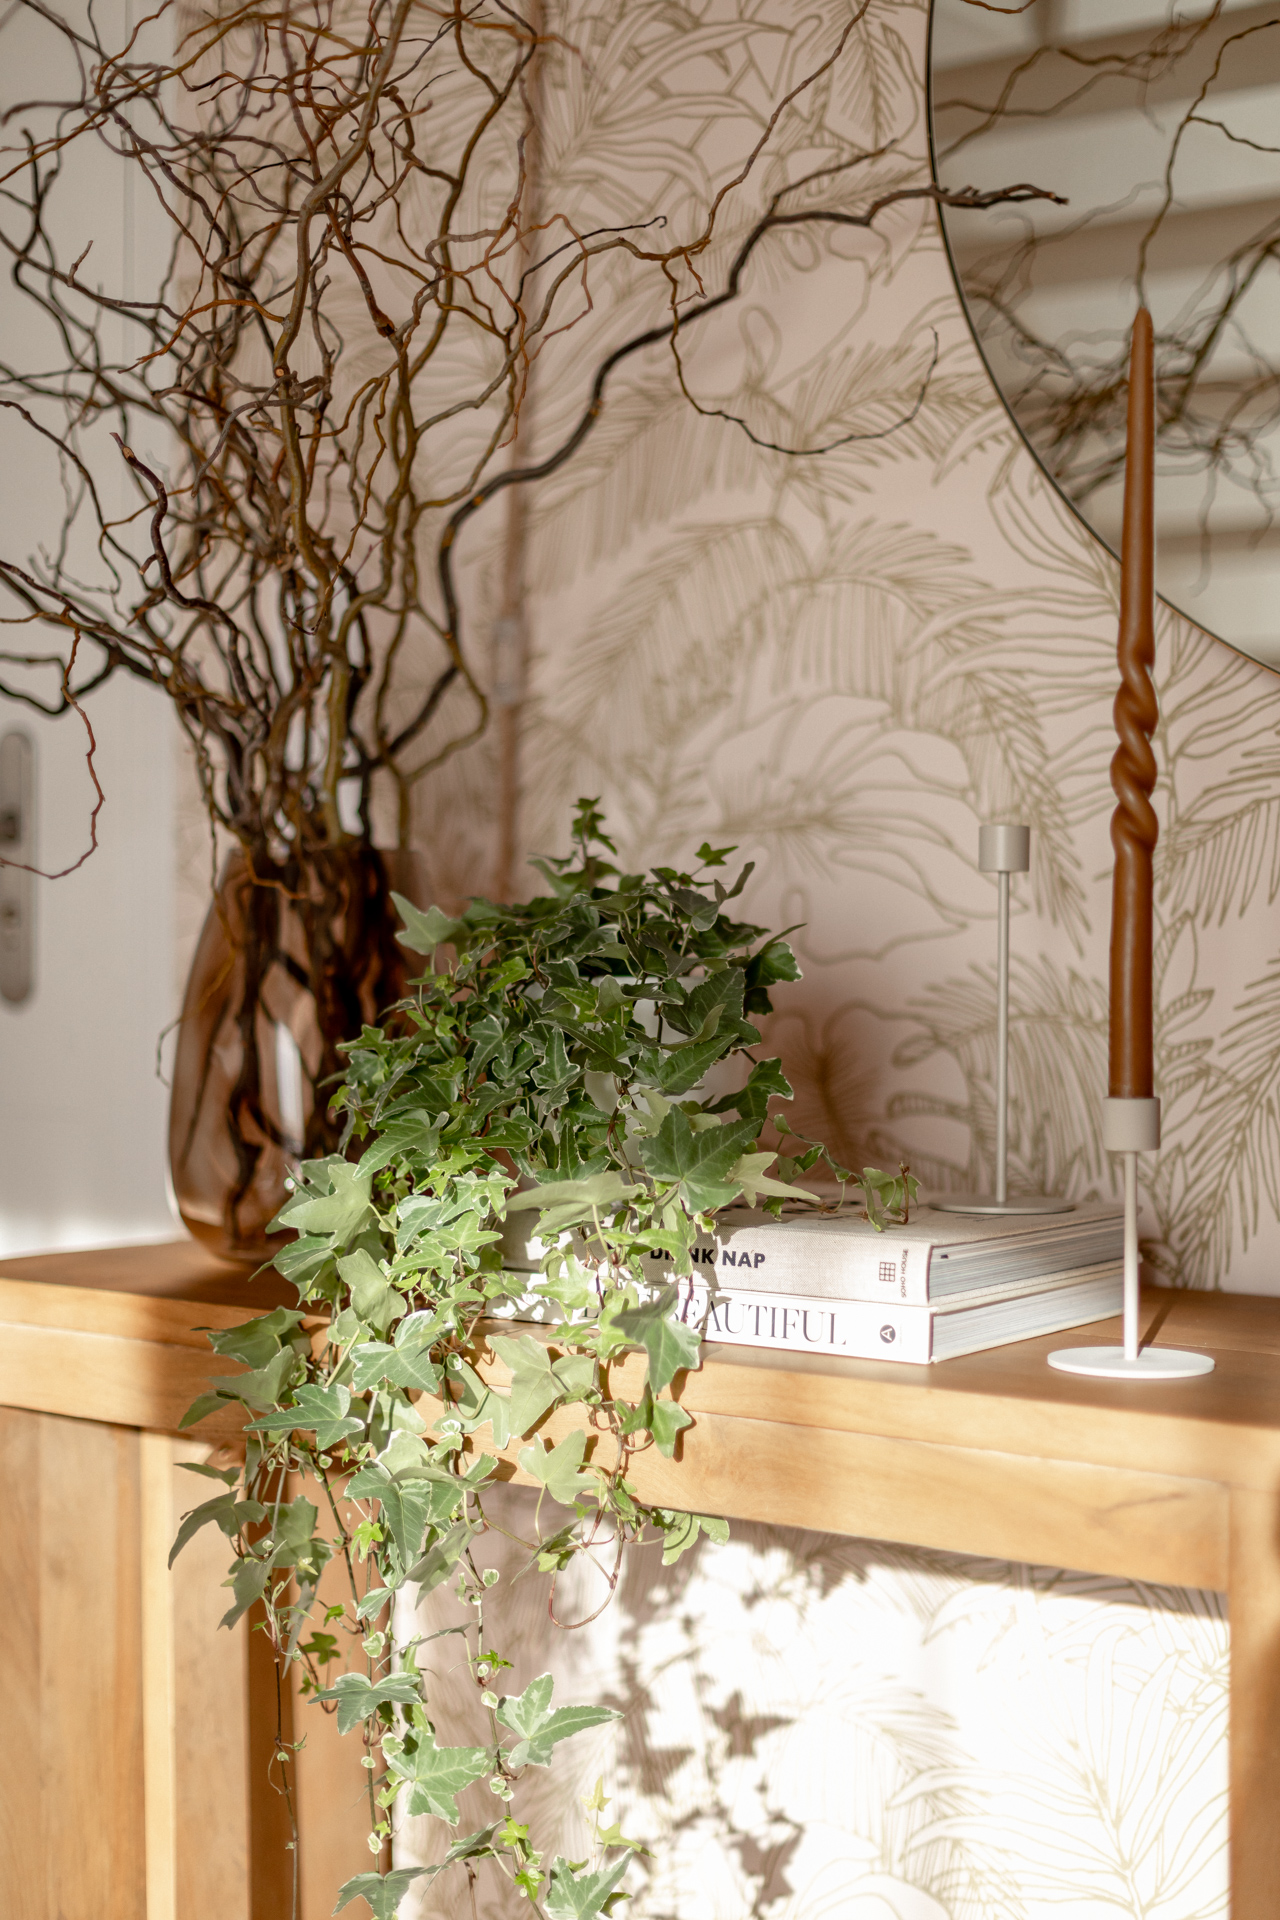 décoration console avec bougeoirs, bougie, plante lierre, livres déco et vase comprenant des branches